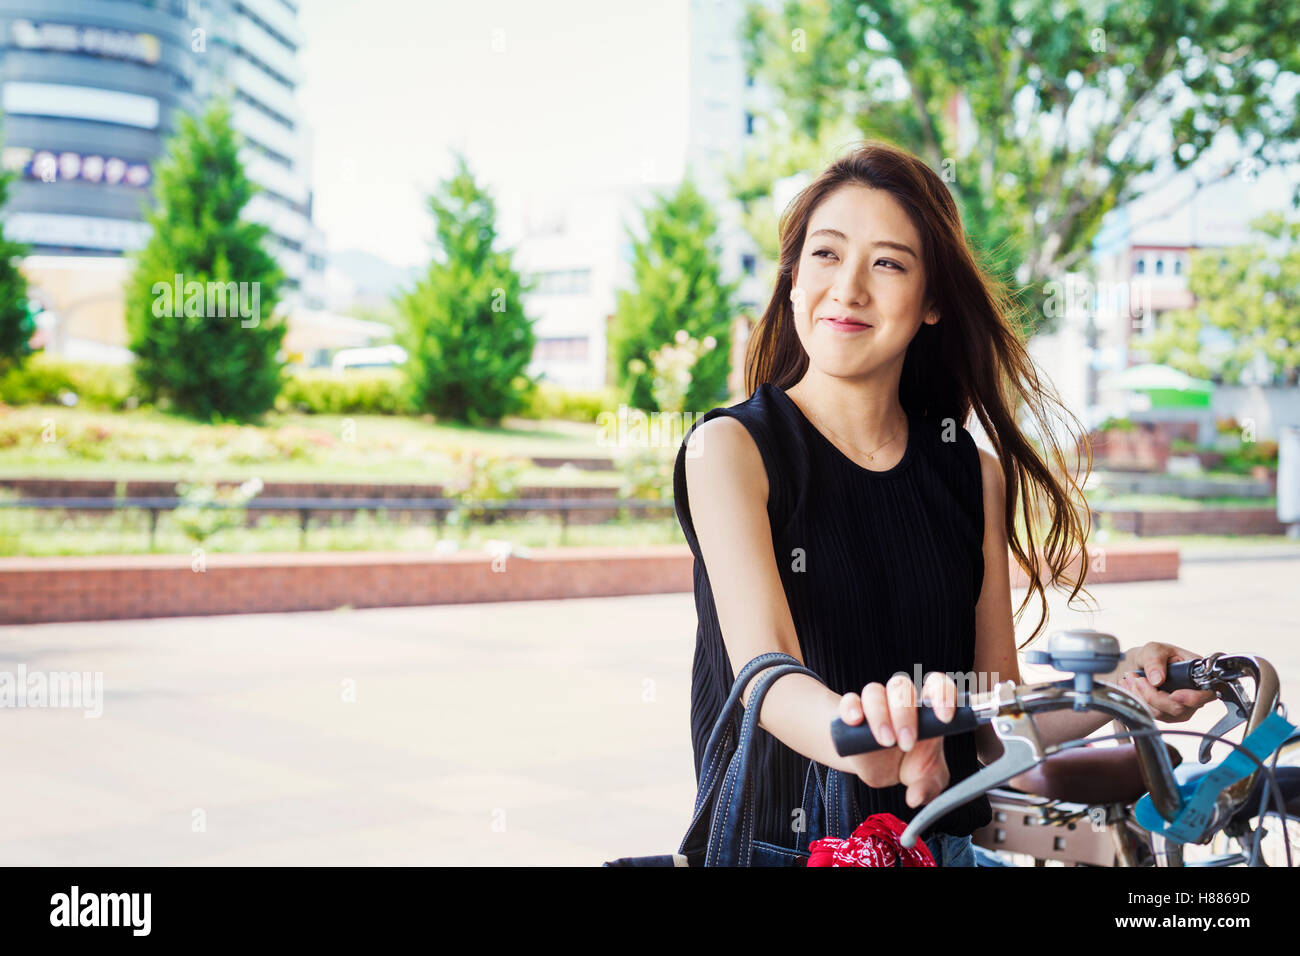 Lächelnde junge Frau mit langen braunen Haaren stand neben dem Fahrrad. Stockfoto